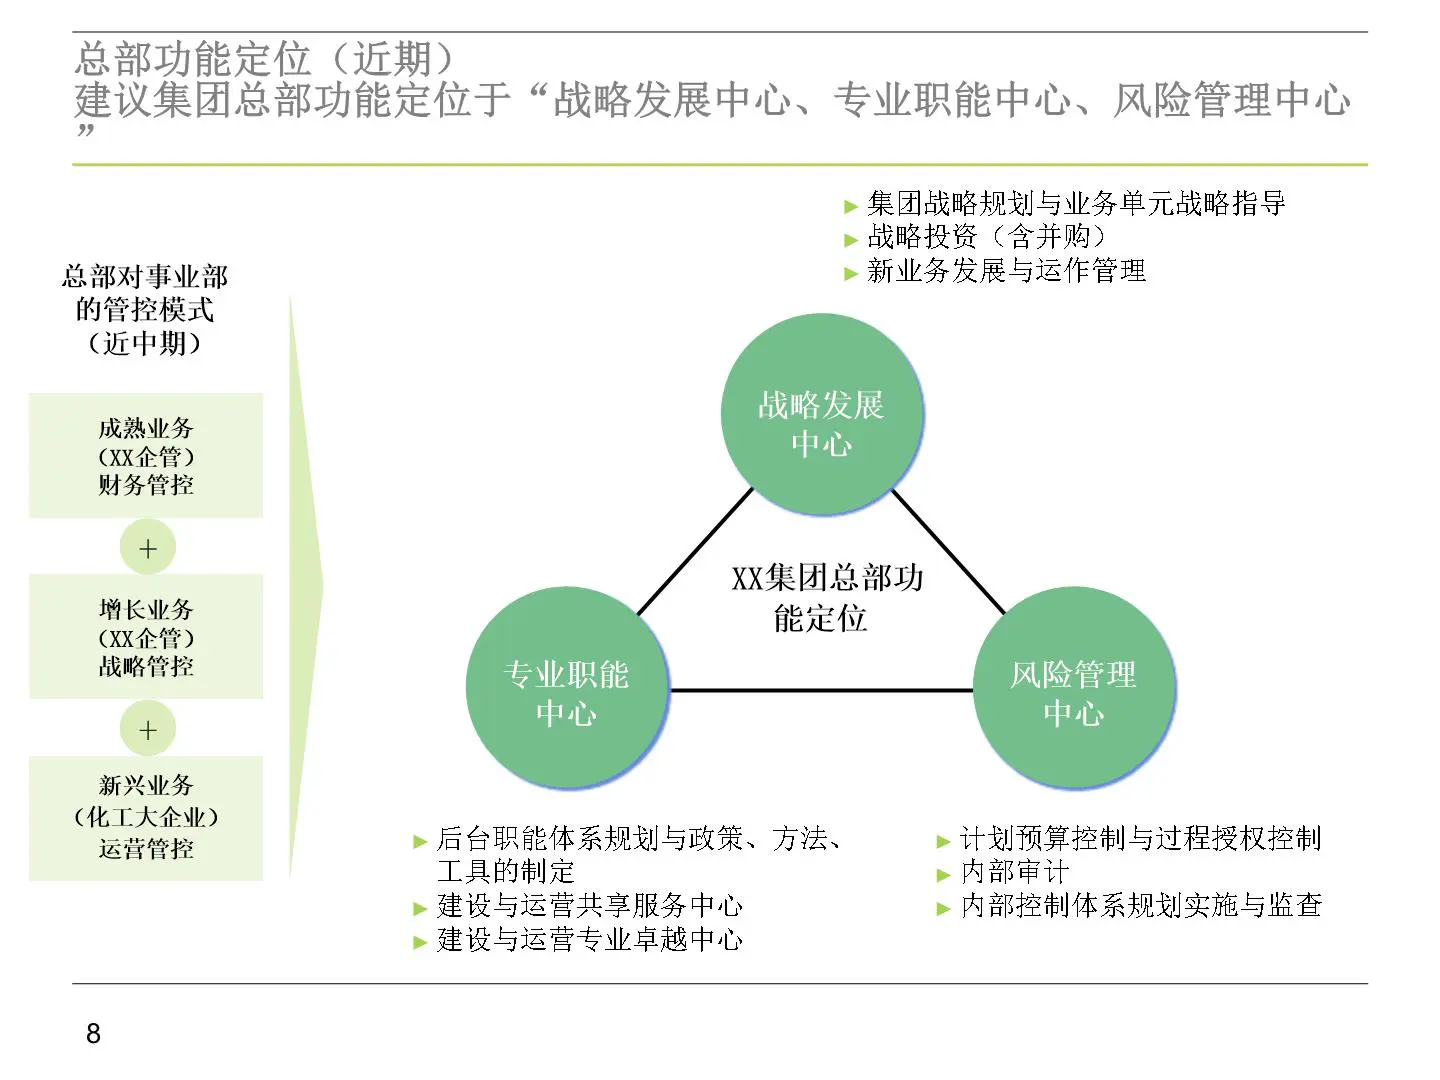 集团总部事业部组织与管理模式插图9